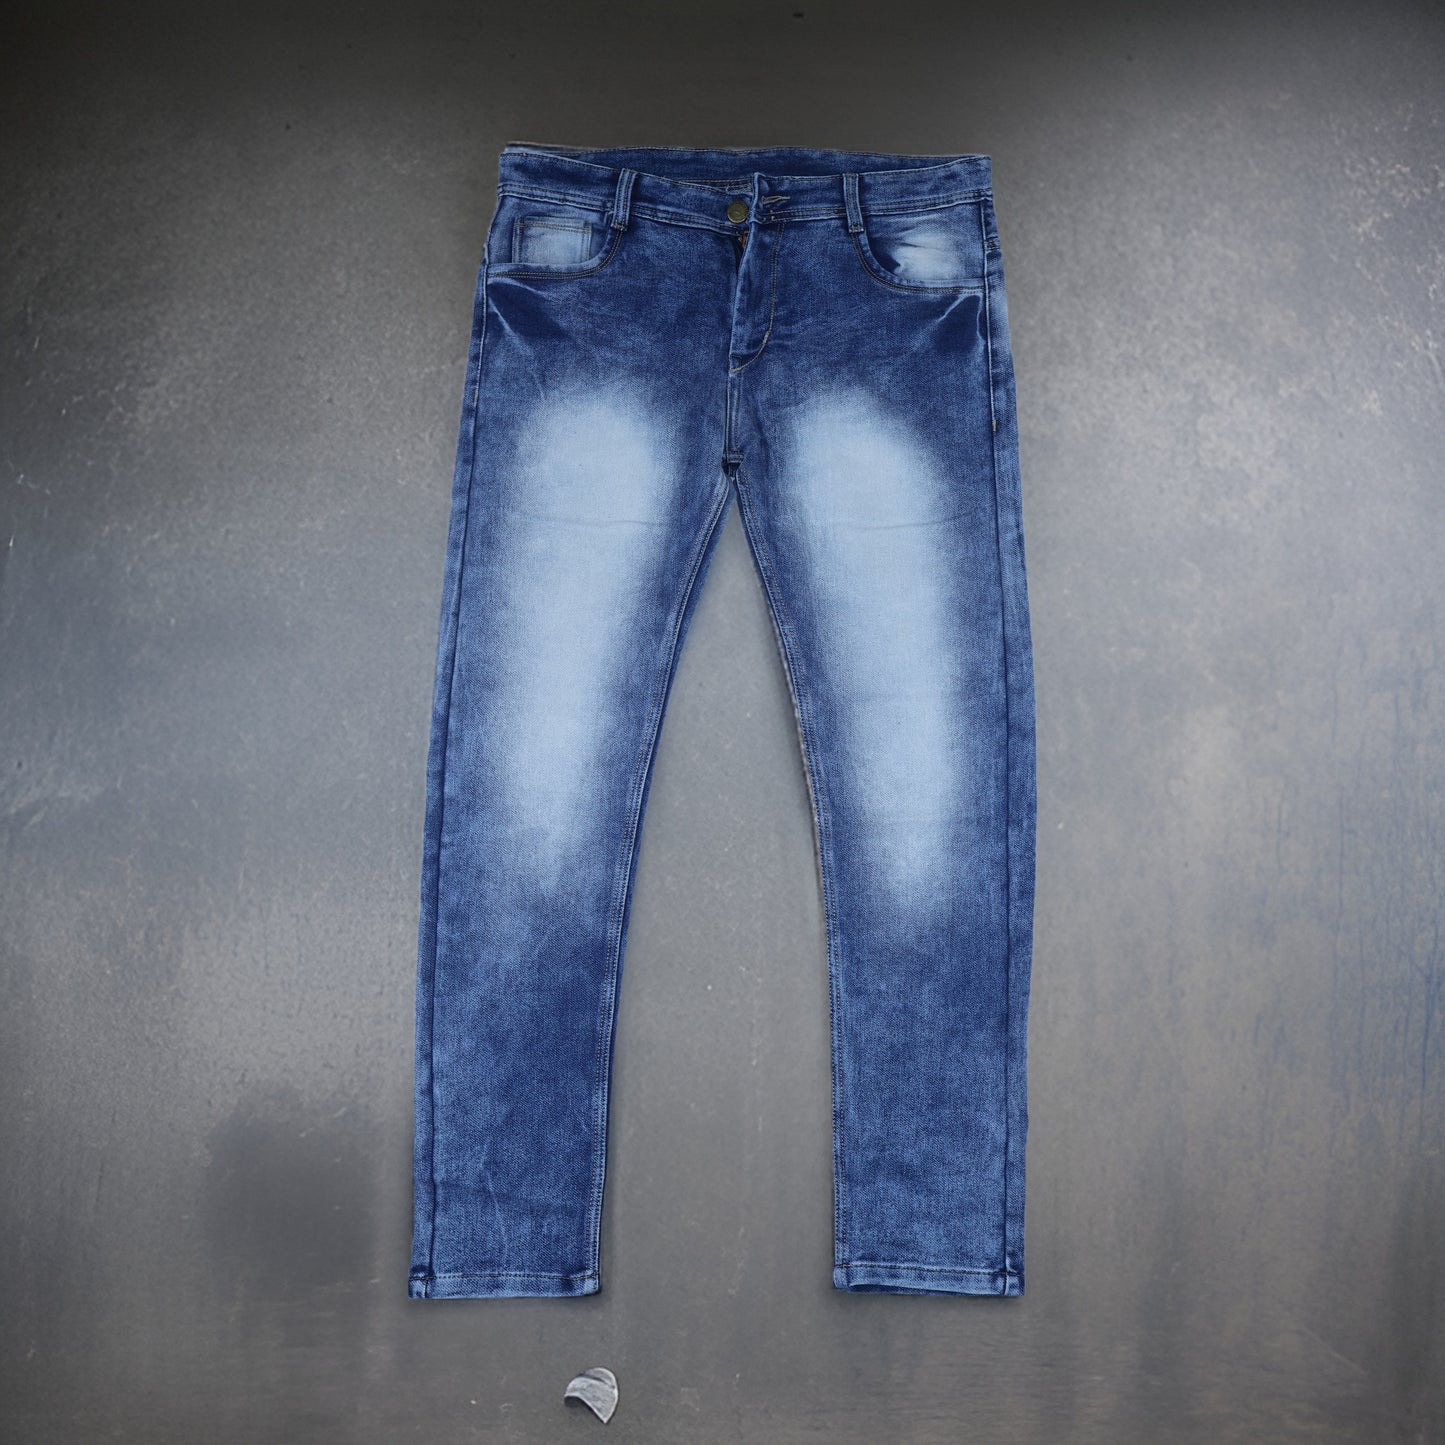 Cloud Blue Jeans Men's Slim Fit Jeans